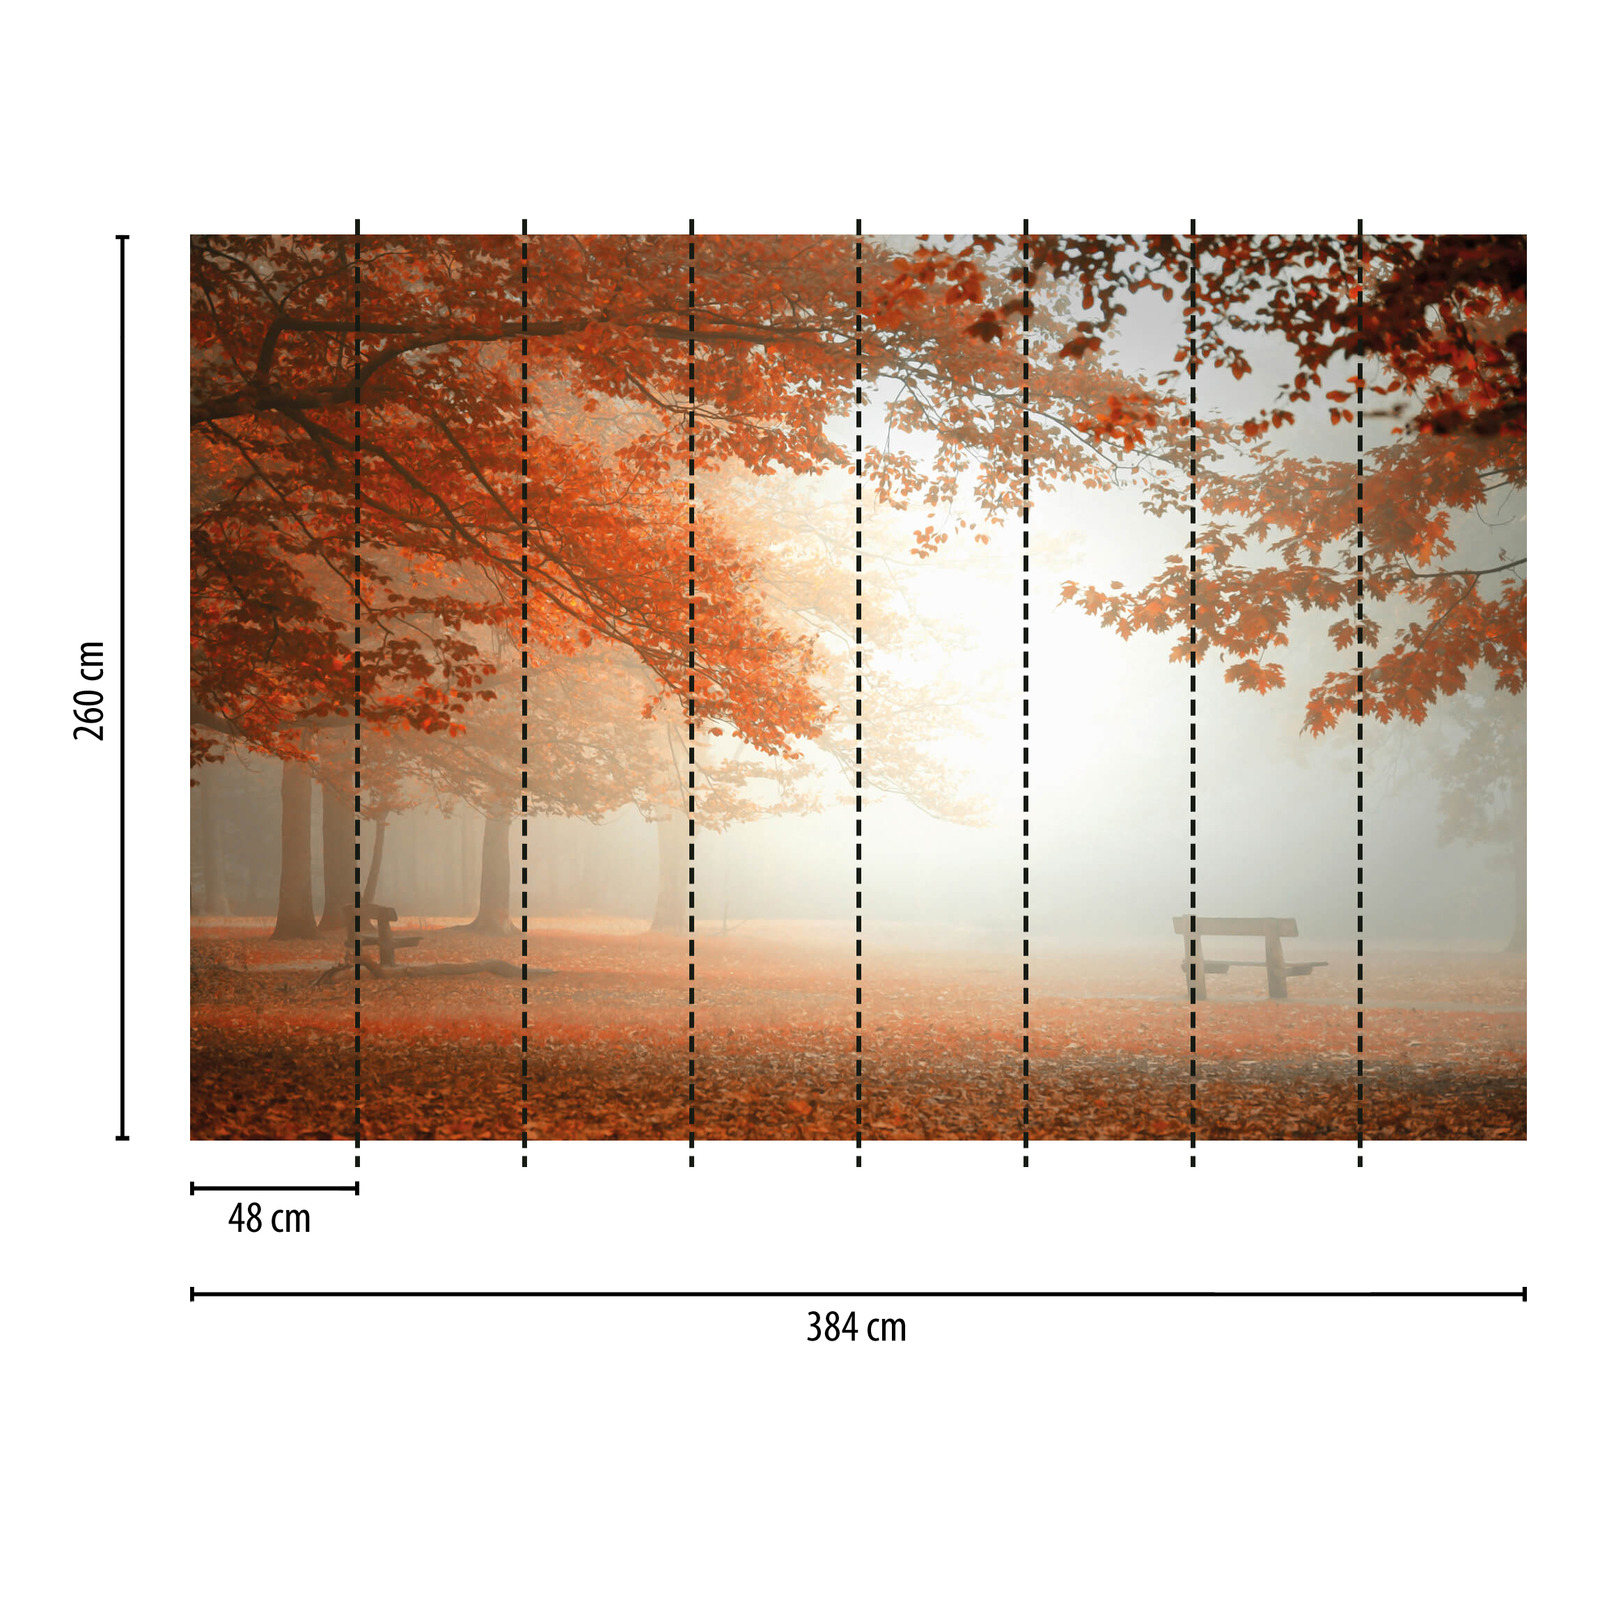             Carta da parati "Foresta d'autunno nella nebbia" - Arancione, rosso, marrone
        